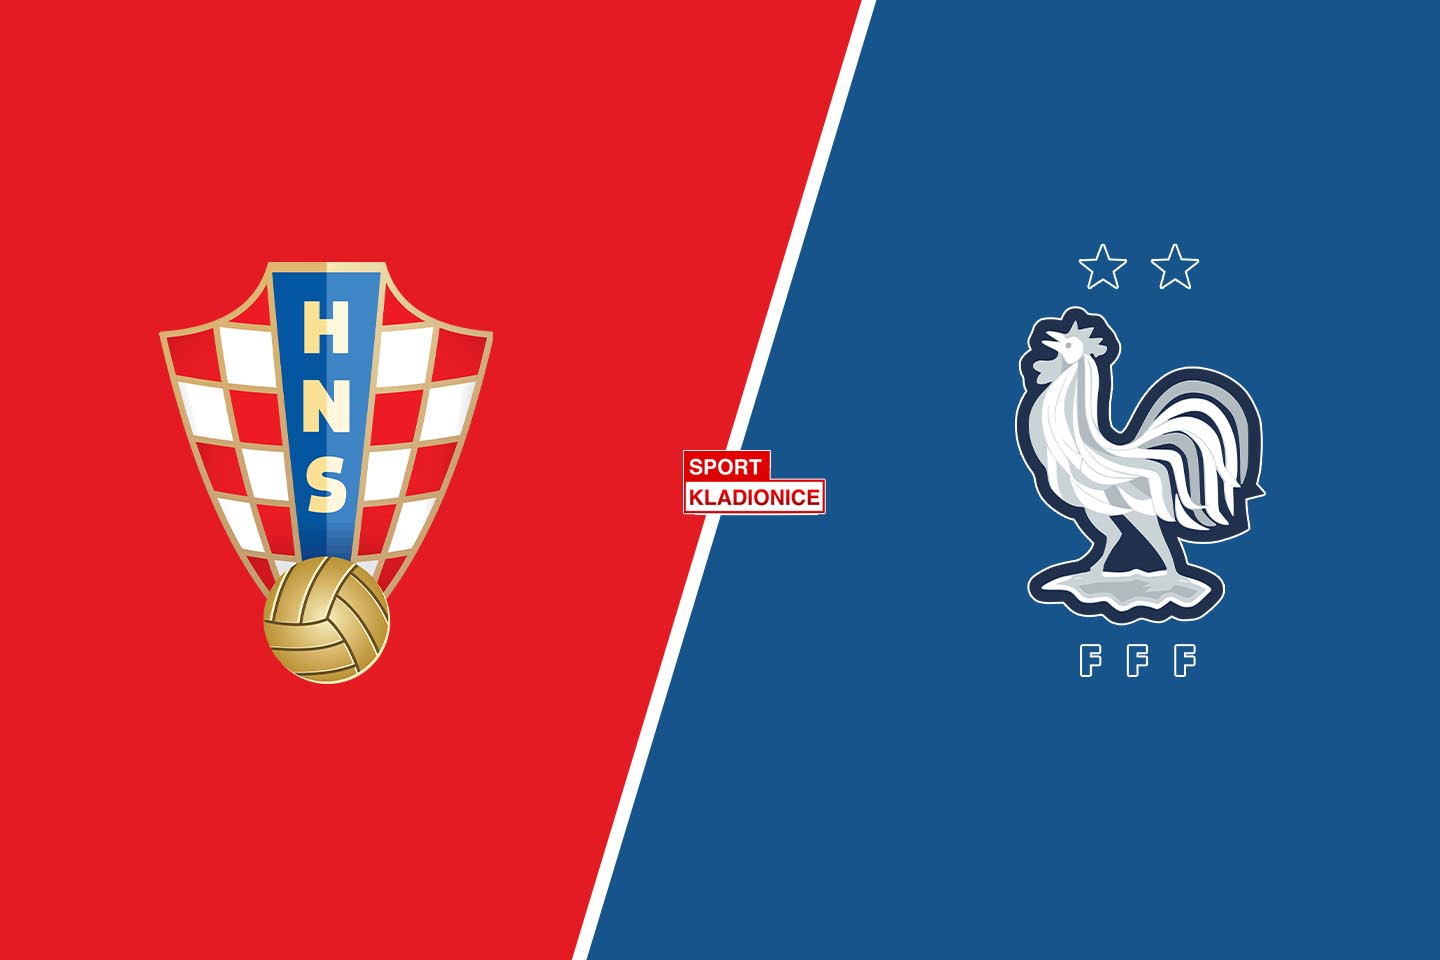 Hrvatska vs. Francuska